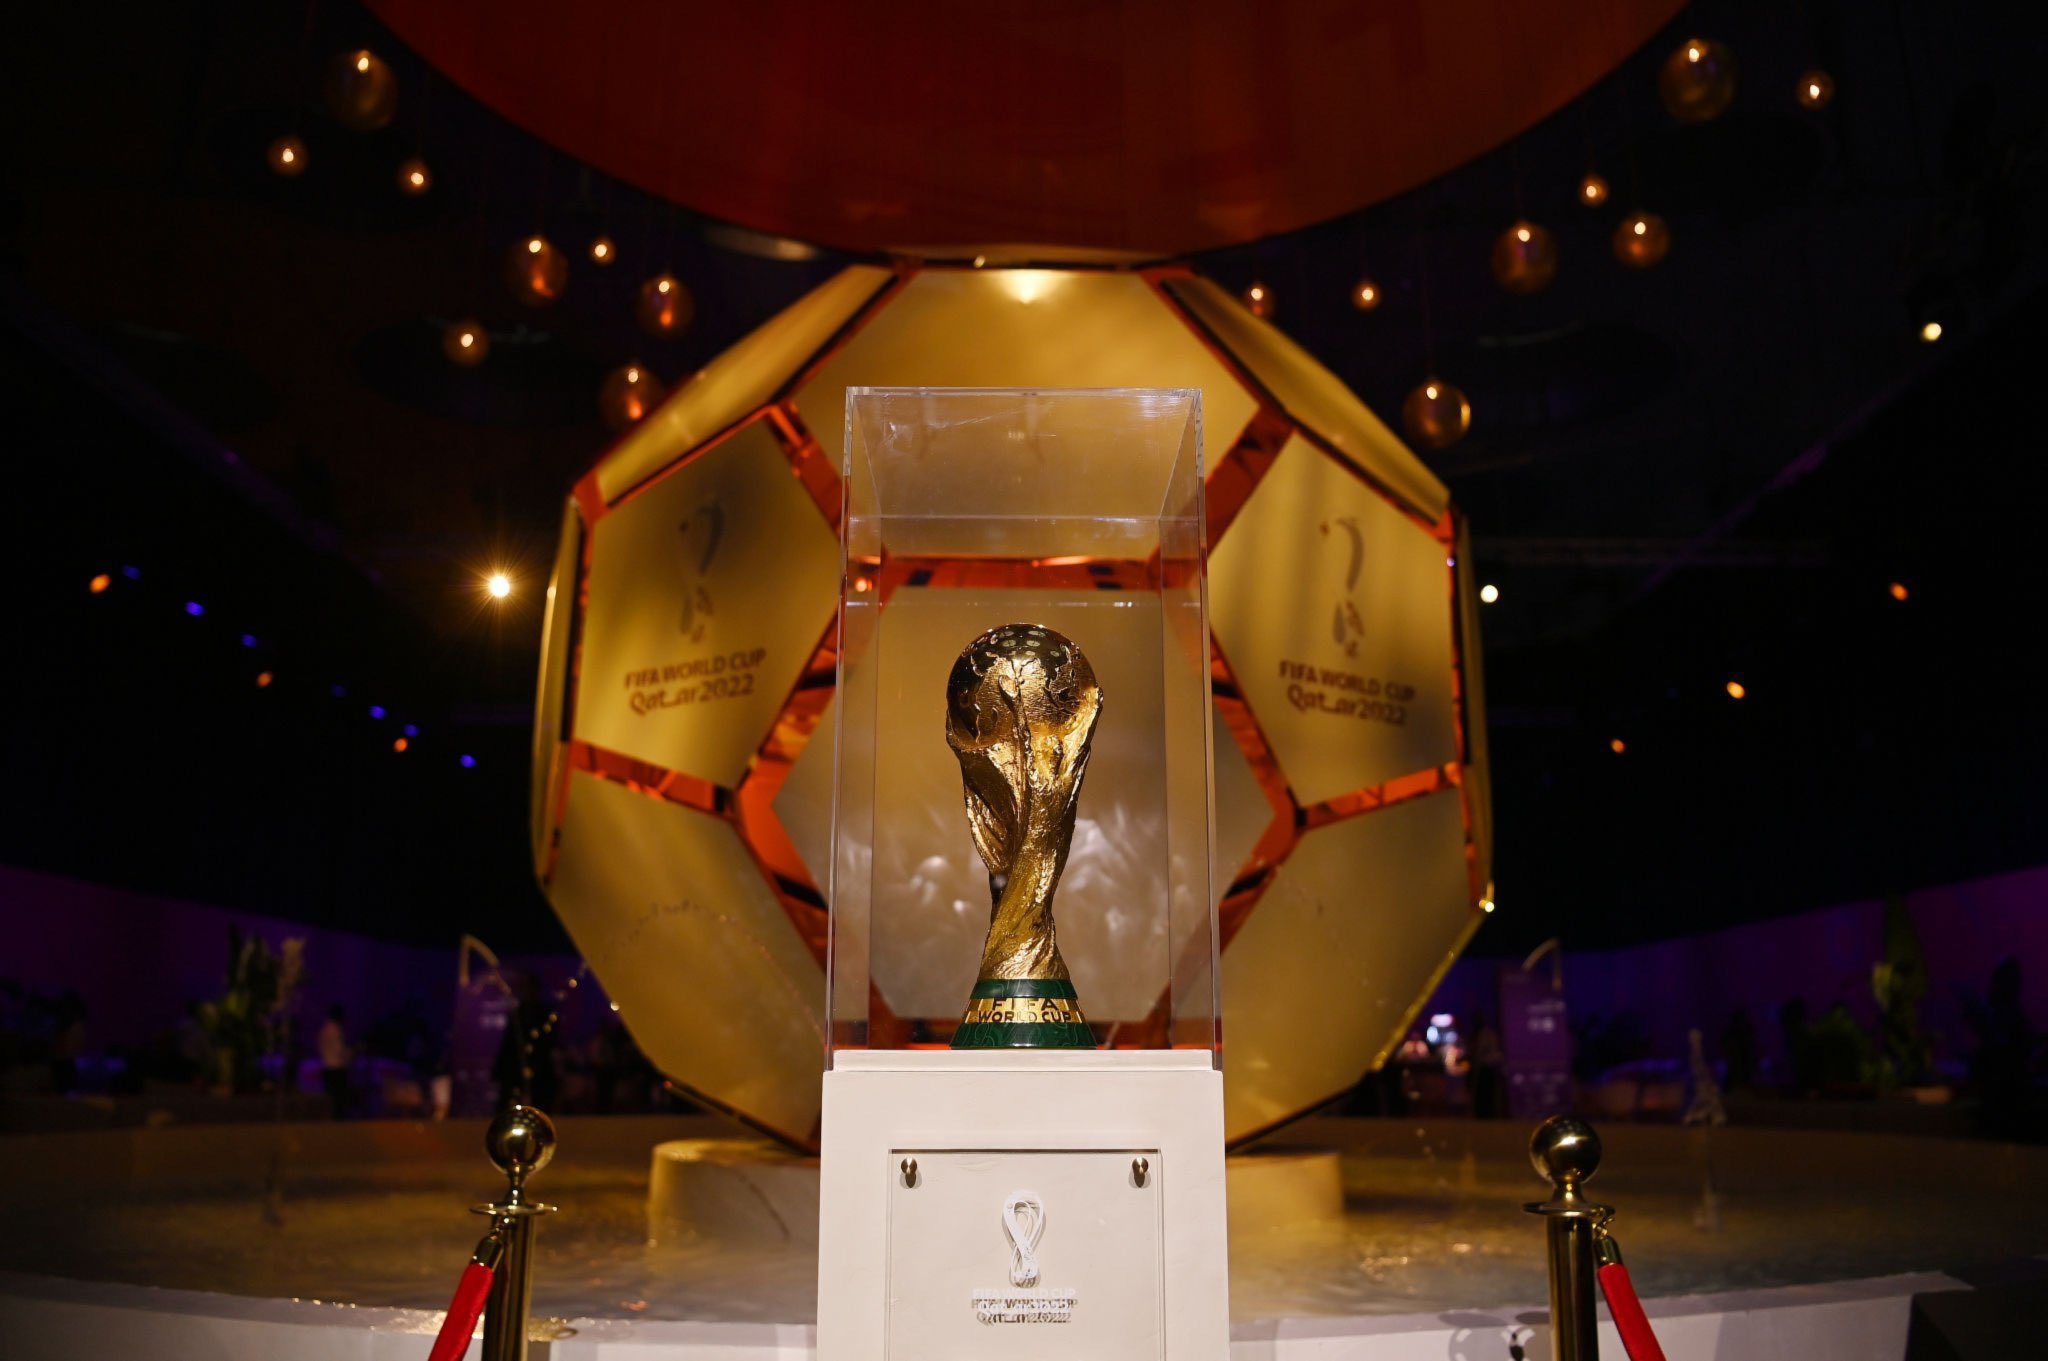 FIFA Final Draw recap groups and fixtures